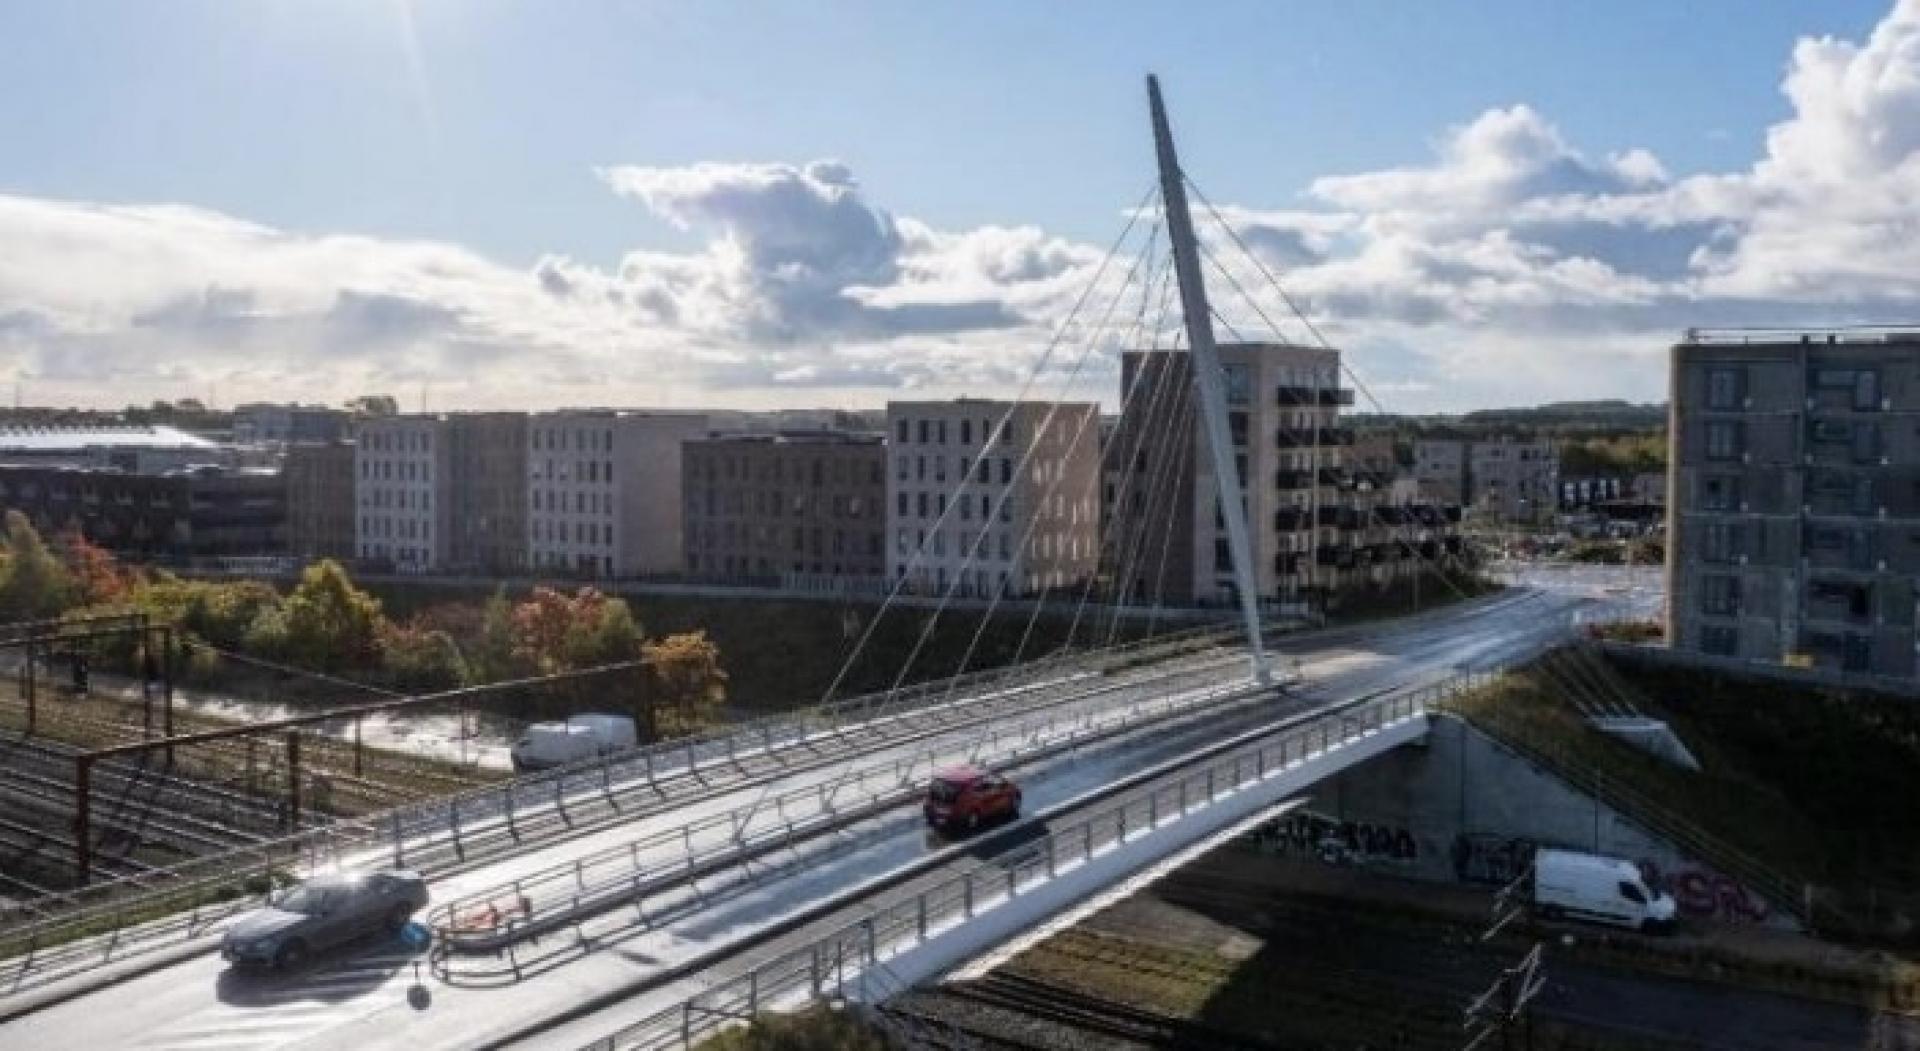 Det er Dissing+Weitling, der har tegner den 42 meter lange vej- og cykelbro, som forbinder den nye bydel Nærheden med Hedehusene. Broen er opført af Jorton, Valmont og M.J. Eriksson, mens Cowi har været konsulent. Foto fra nomineringen